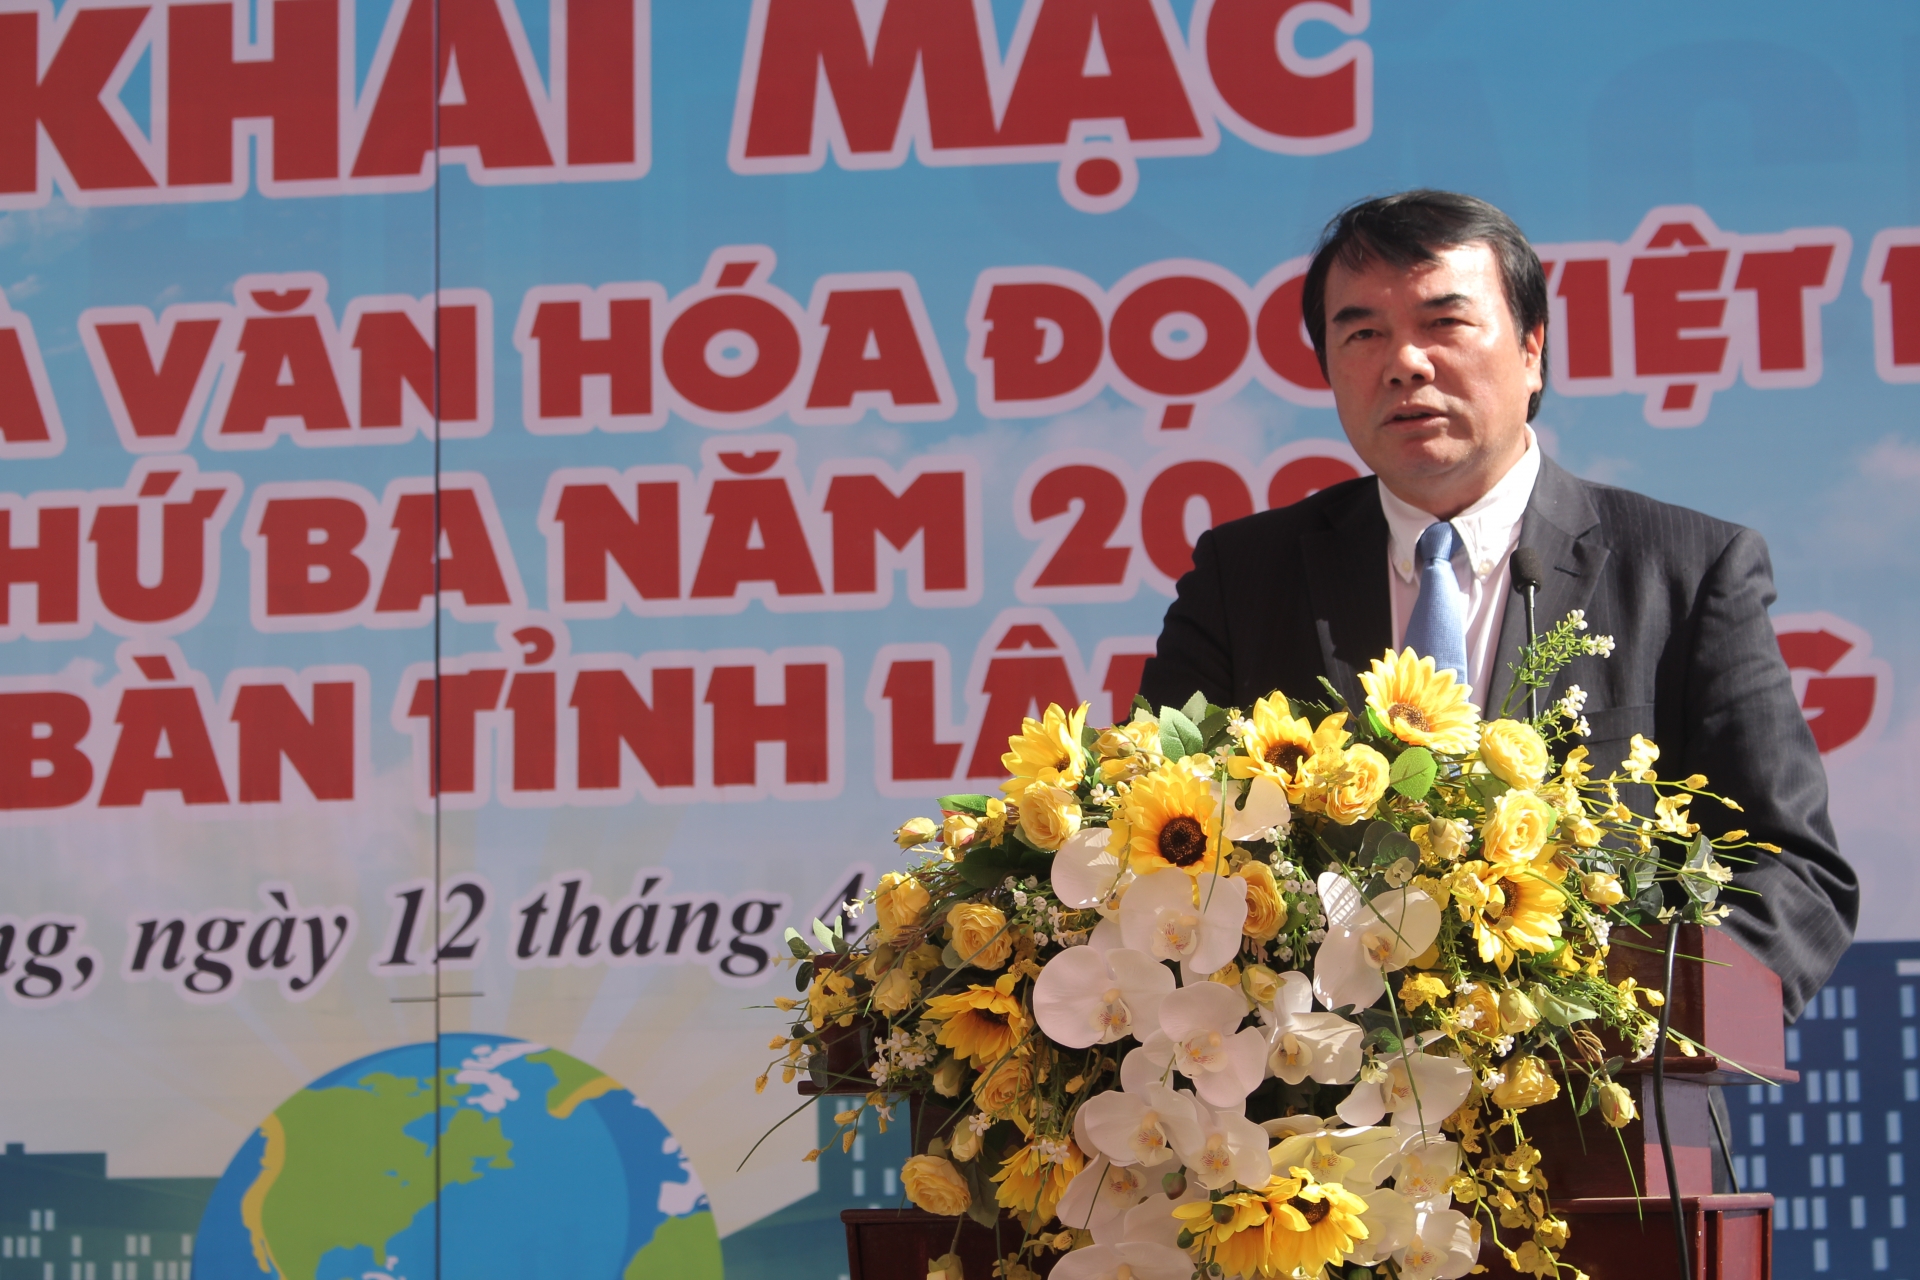 Khai mạc Ngày sách và Văn hóa đọc Việt Nam lần thứ 3 - “Sách hay cần bạn đọc”